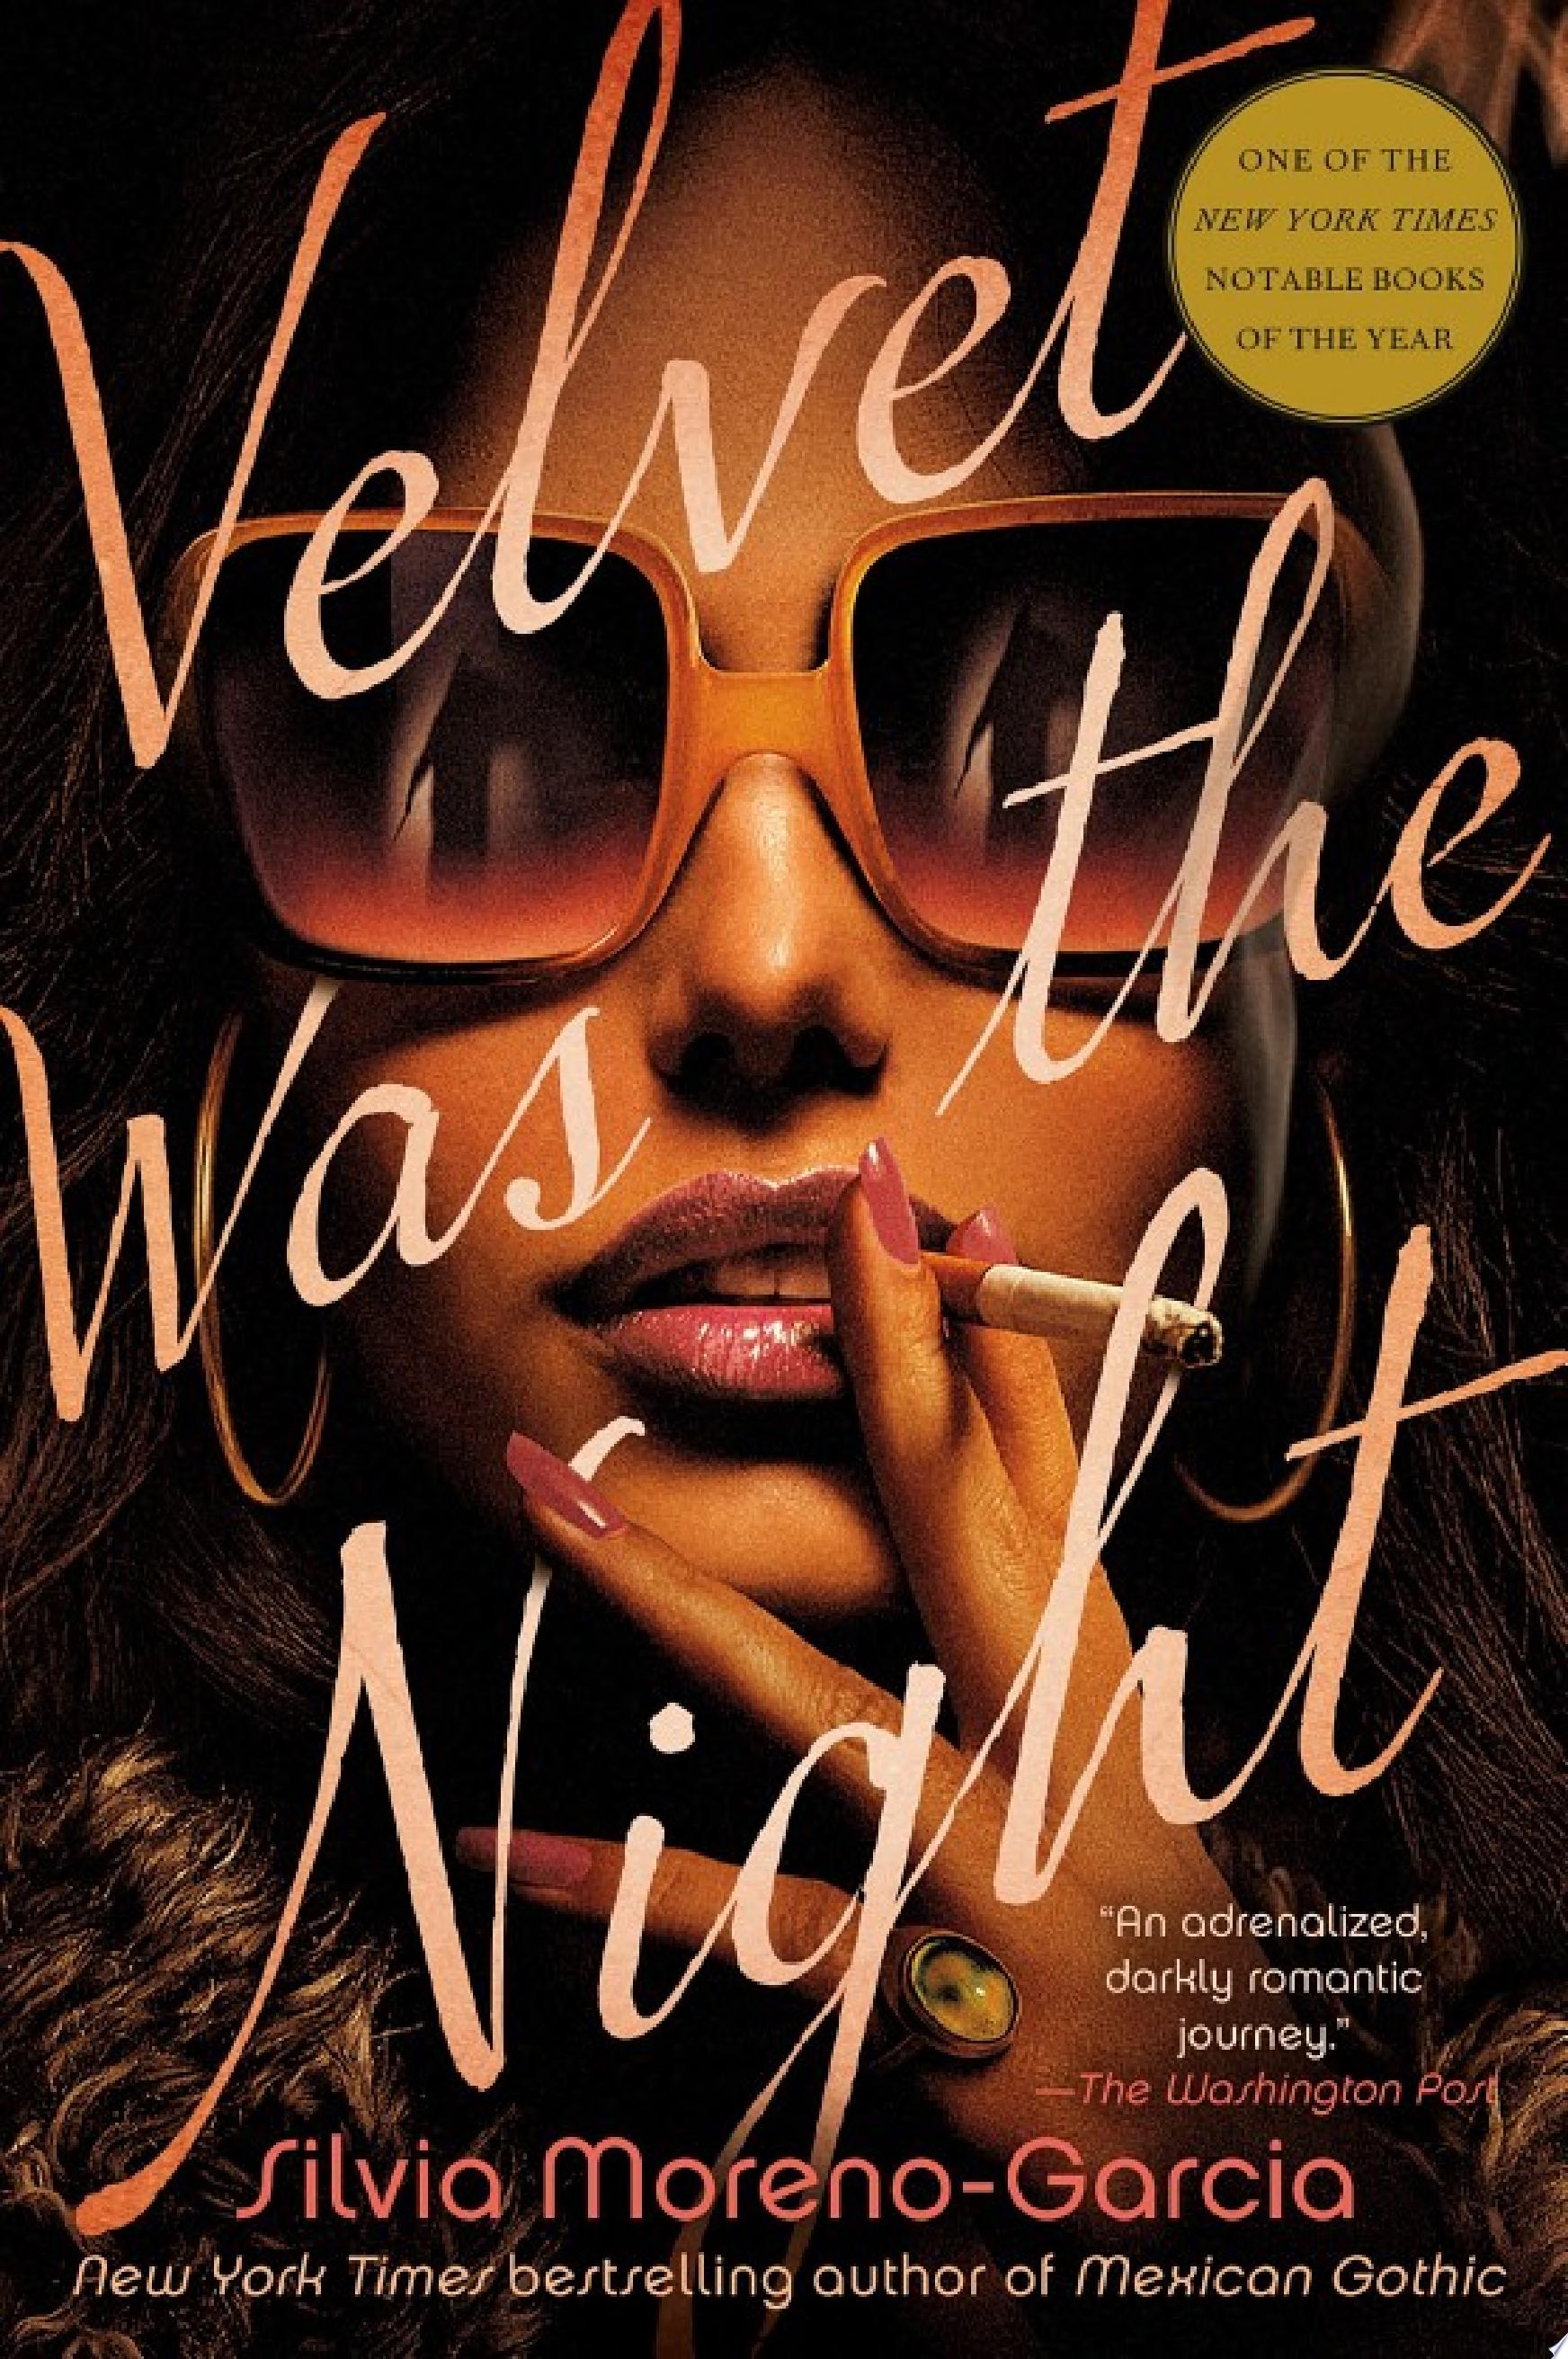 Image for "Velvet Was the Night"